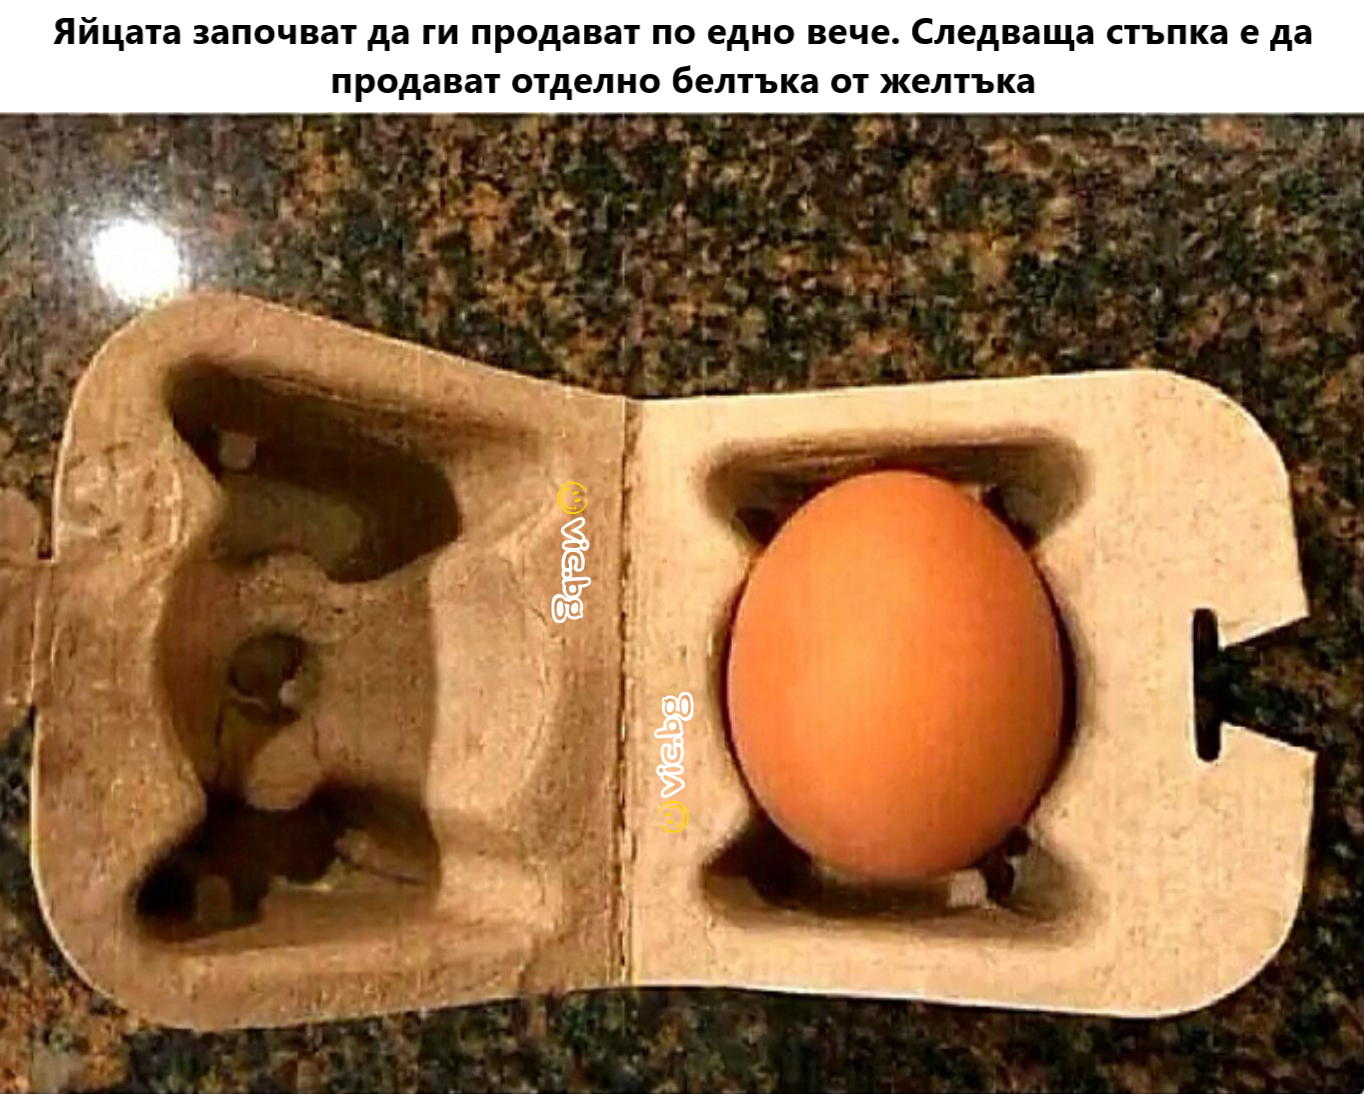 Яйцата започват да ги продават по едно вече. Следваща стъпка е да продават отделно белтъка от желтъка